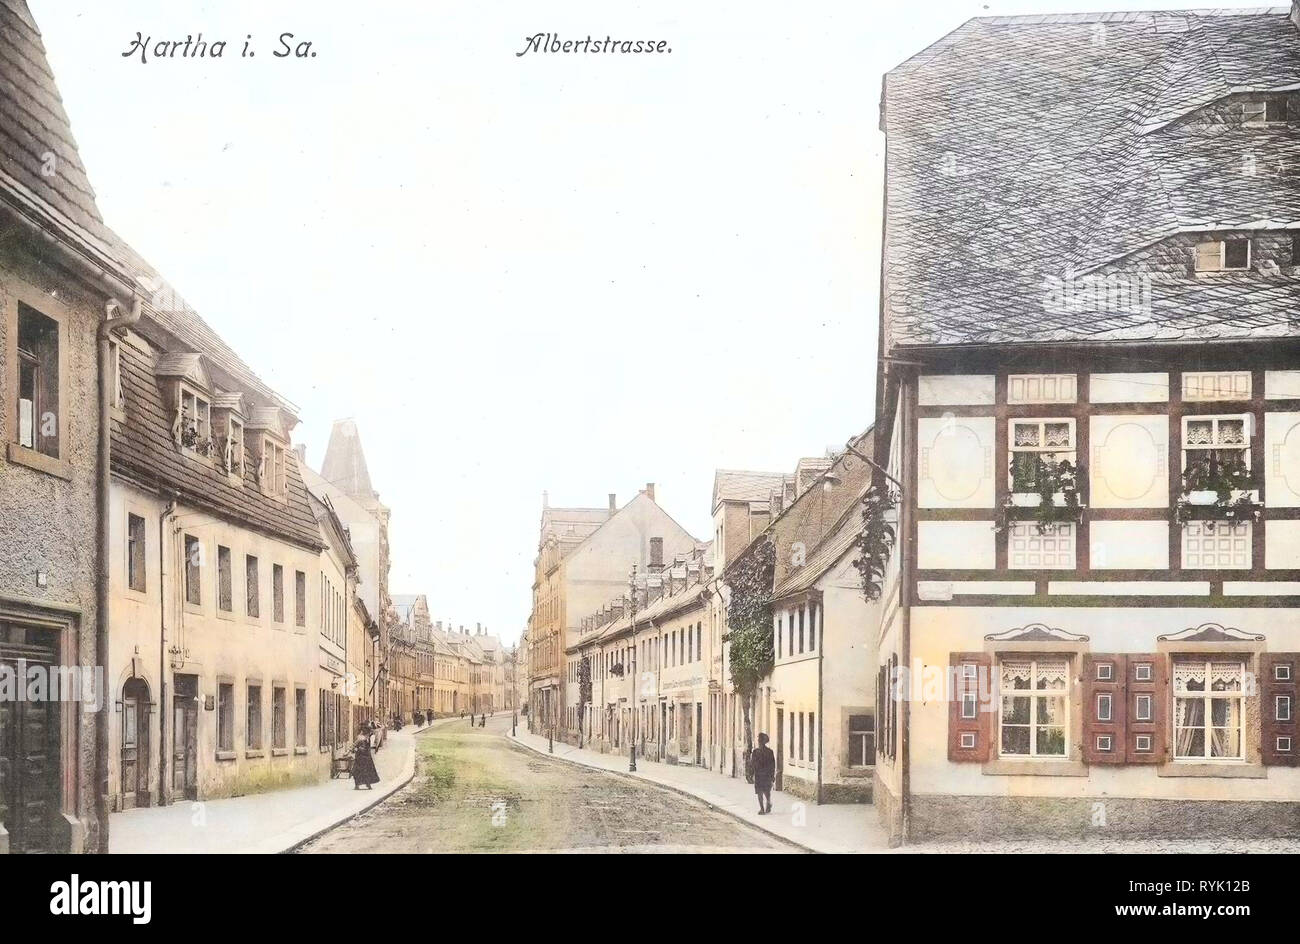 Bâtiments de Hartha, cartes postales de bâtiments en Landkreis Mittelsachsen, Karl-Marx-Straße (Hartha), 1913, Landkreis Mittelsachsen, Hartha, Albertstraße, Allemagne Banque D'Images